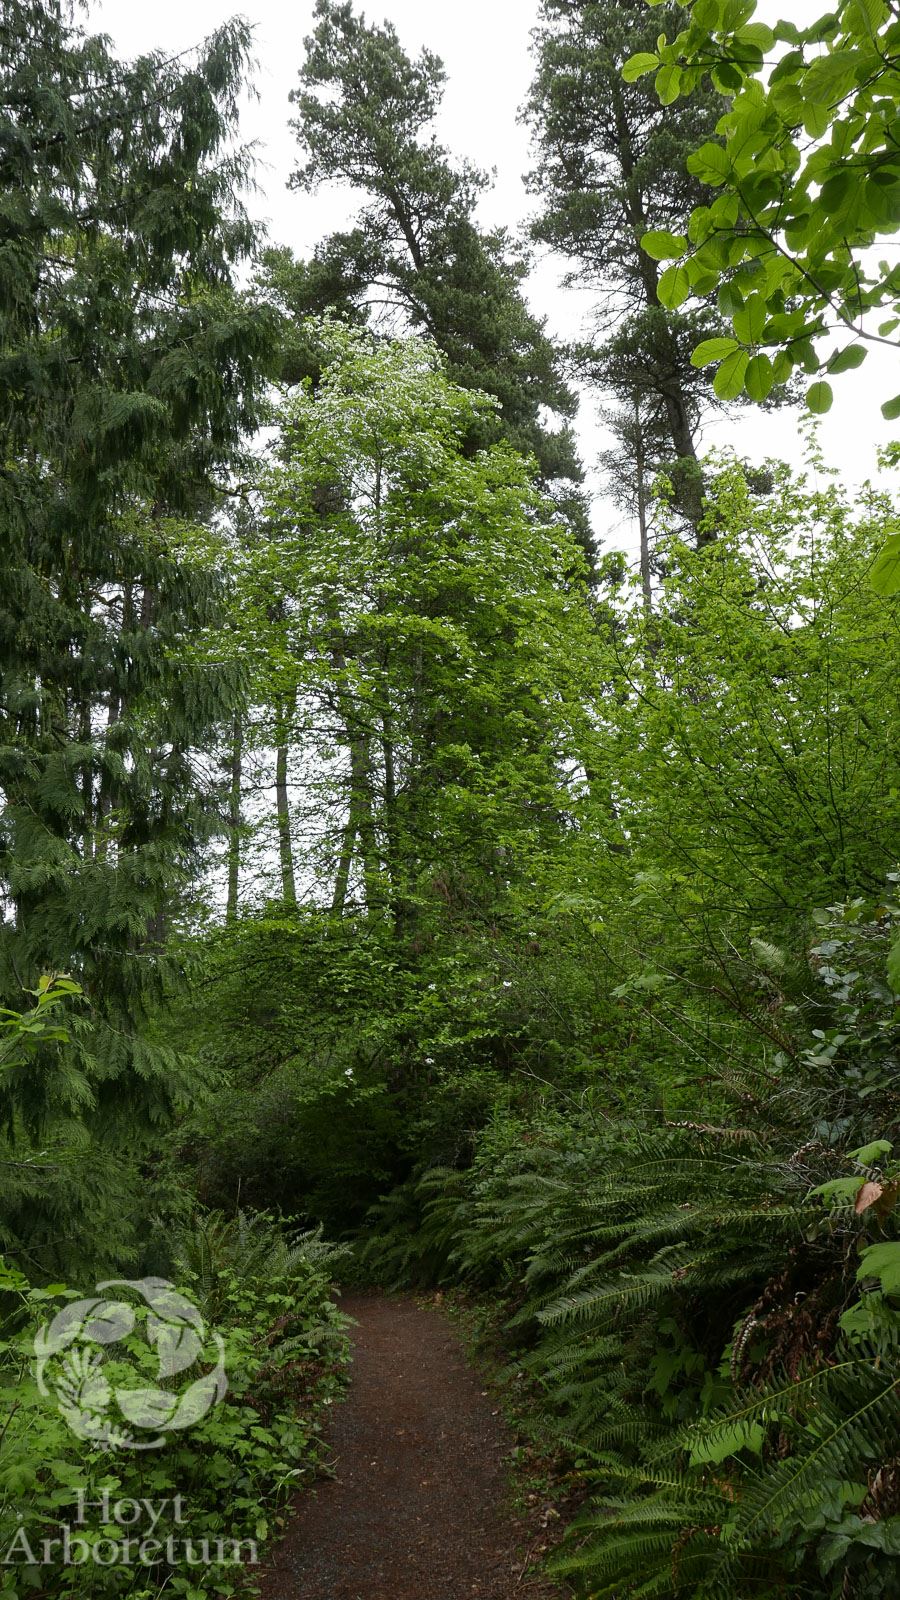 Cornus nuttallii - Pacific dogwood